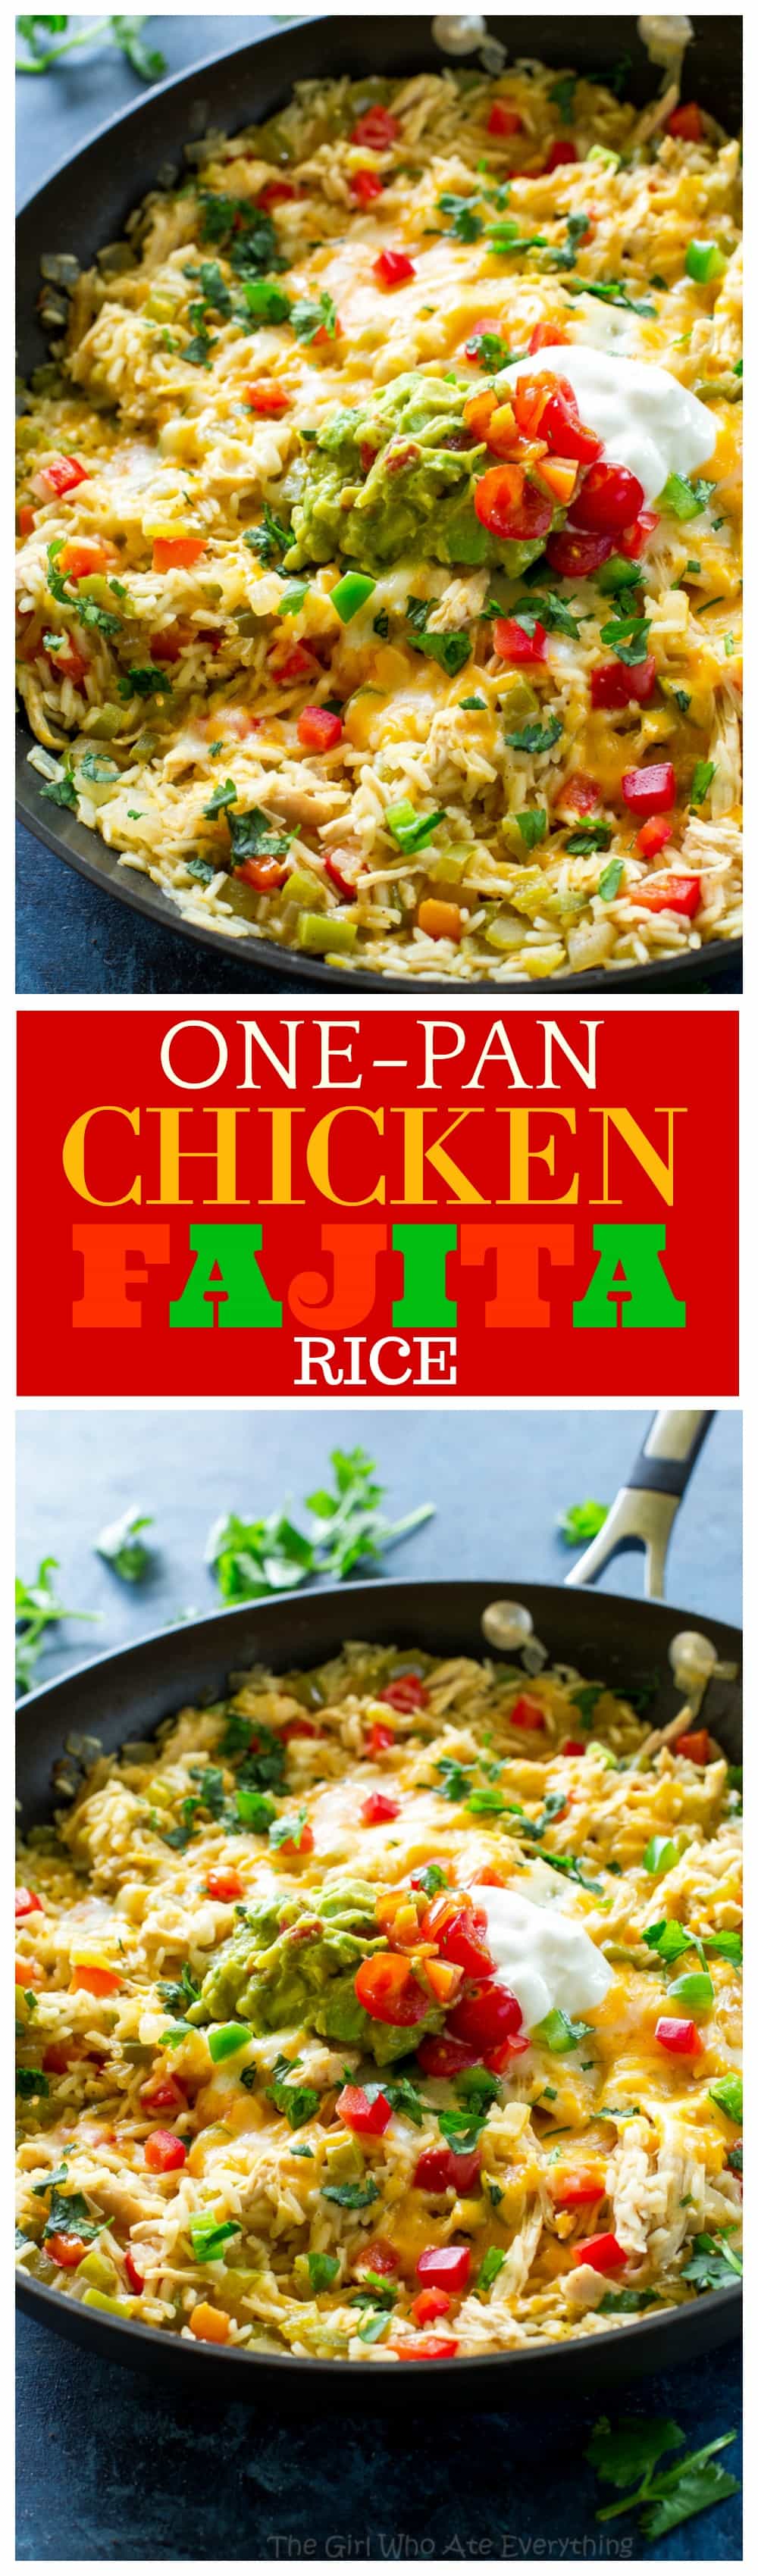 Chicken Fajita Skillet, One-pan meal